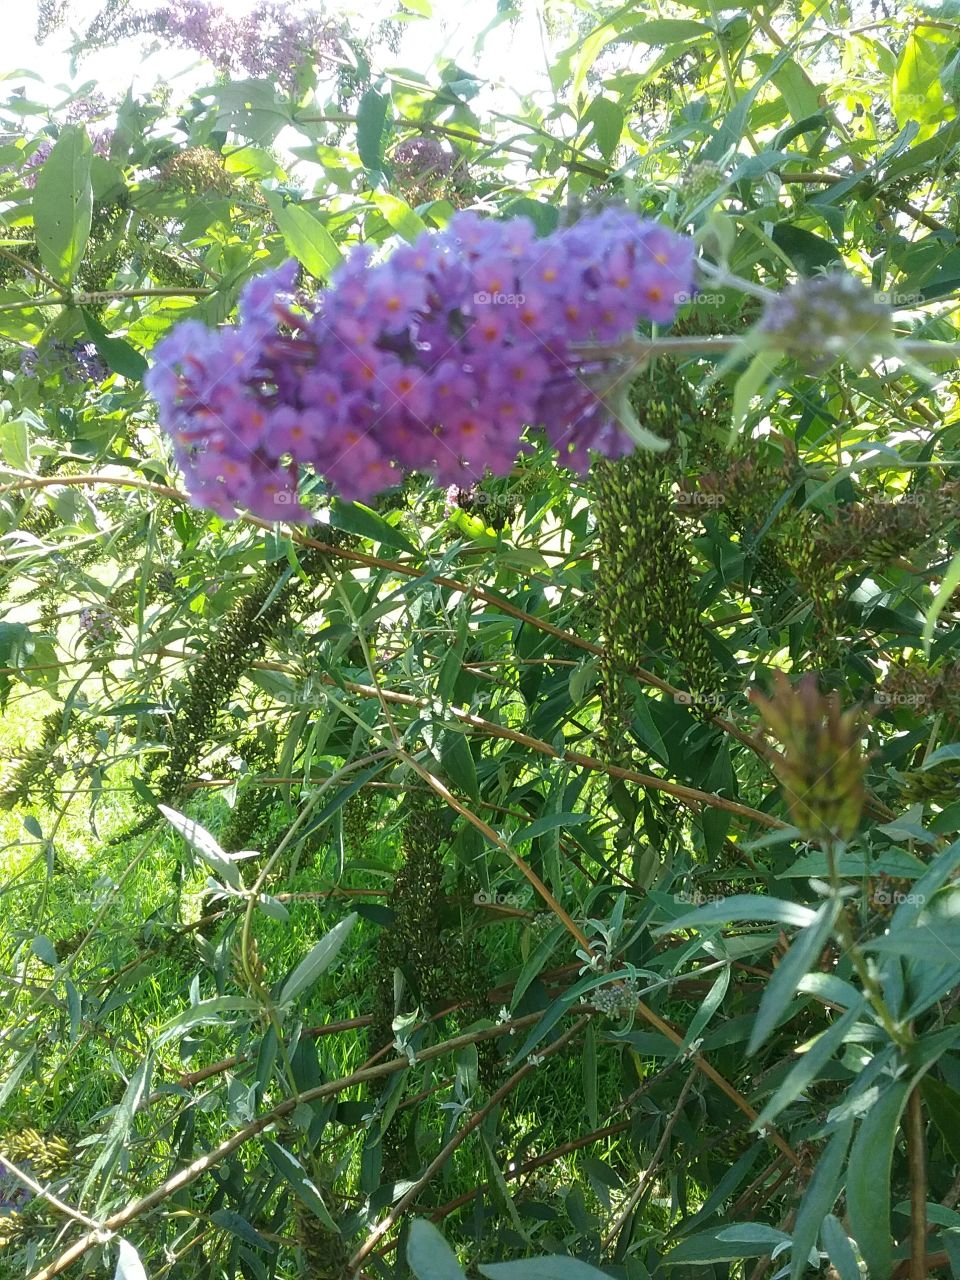 The butterfly bush in bloom